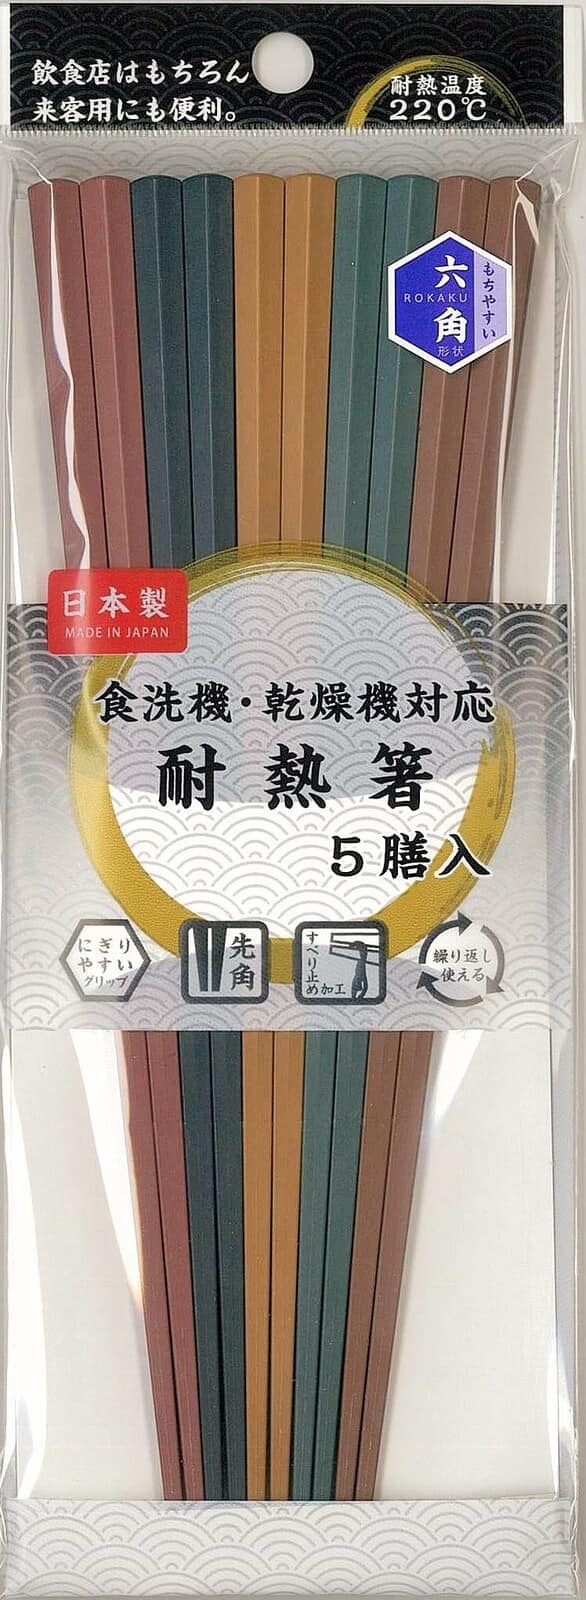 日本餐具【ASAHIKOYO】日本製餐具 耐熱筷子餐具 5入 (4)